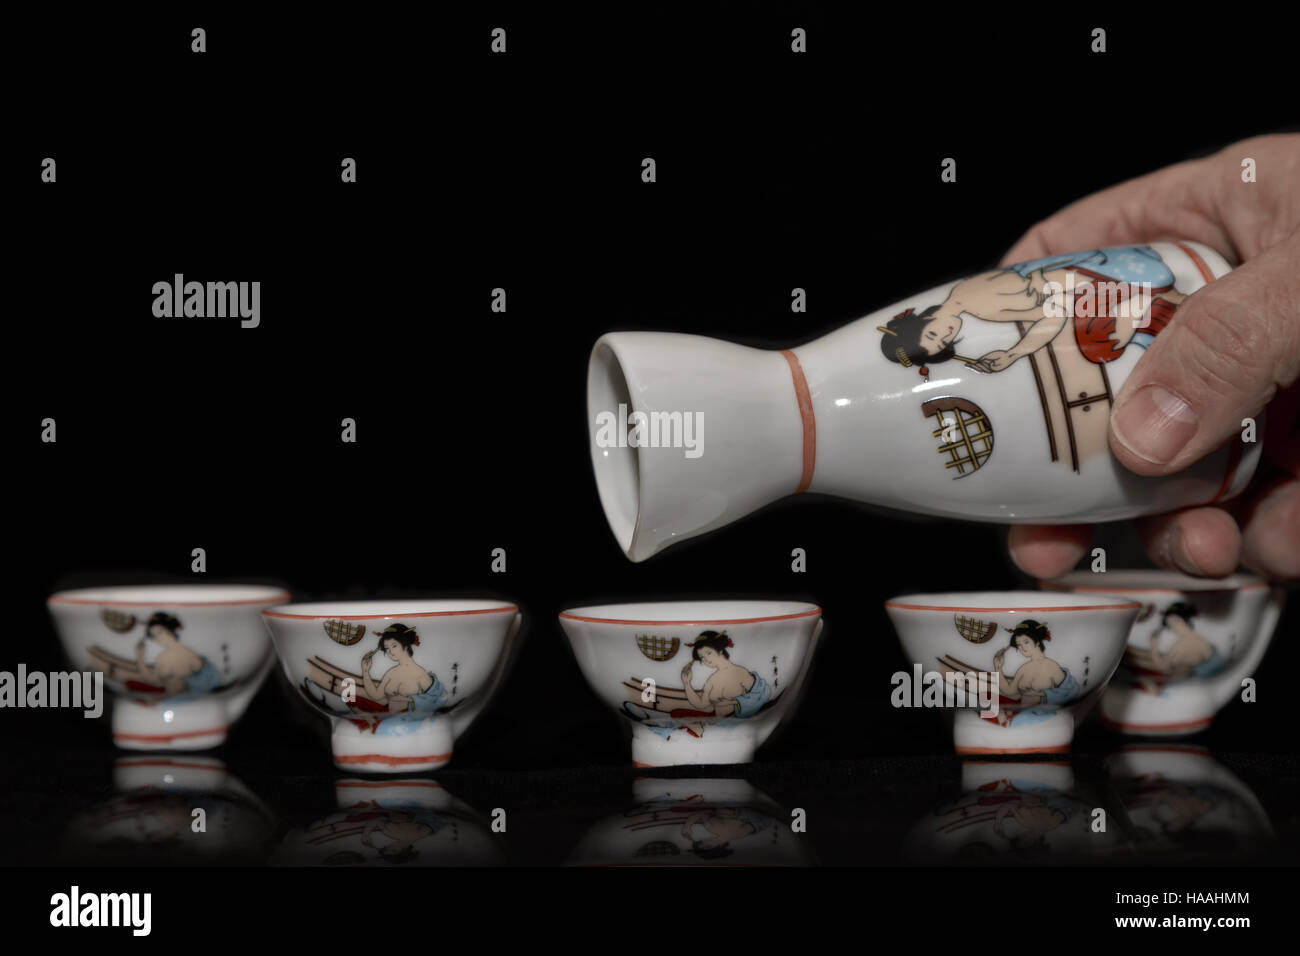 Echando mano de un minúsculo antigüedades asiáticas china jarra en una fila de vasos pequeños coincidentes sobre un fondo oscuro con espacio de copia Foto de stock